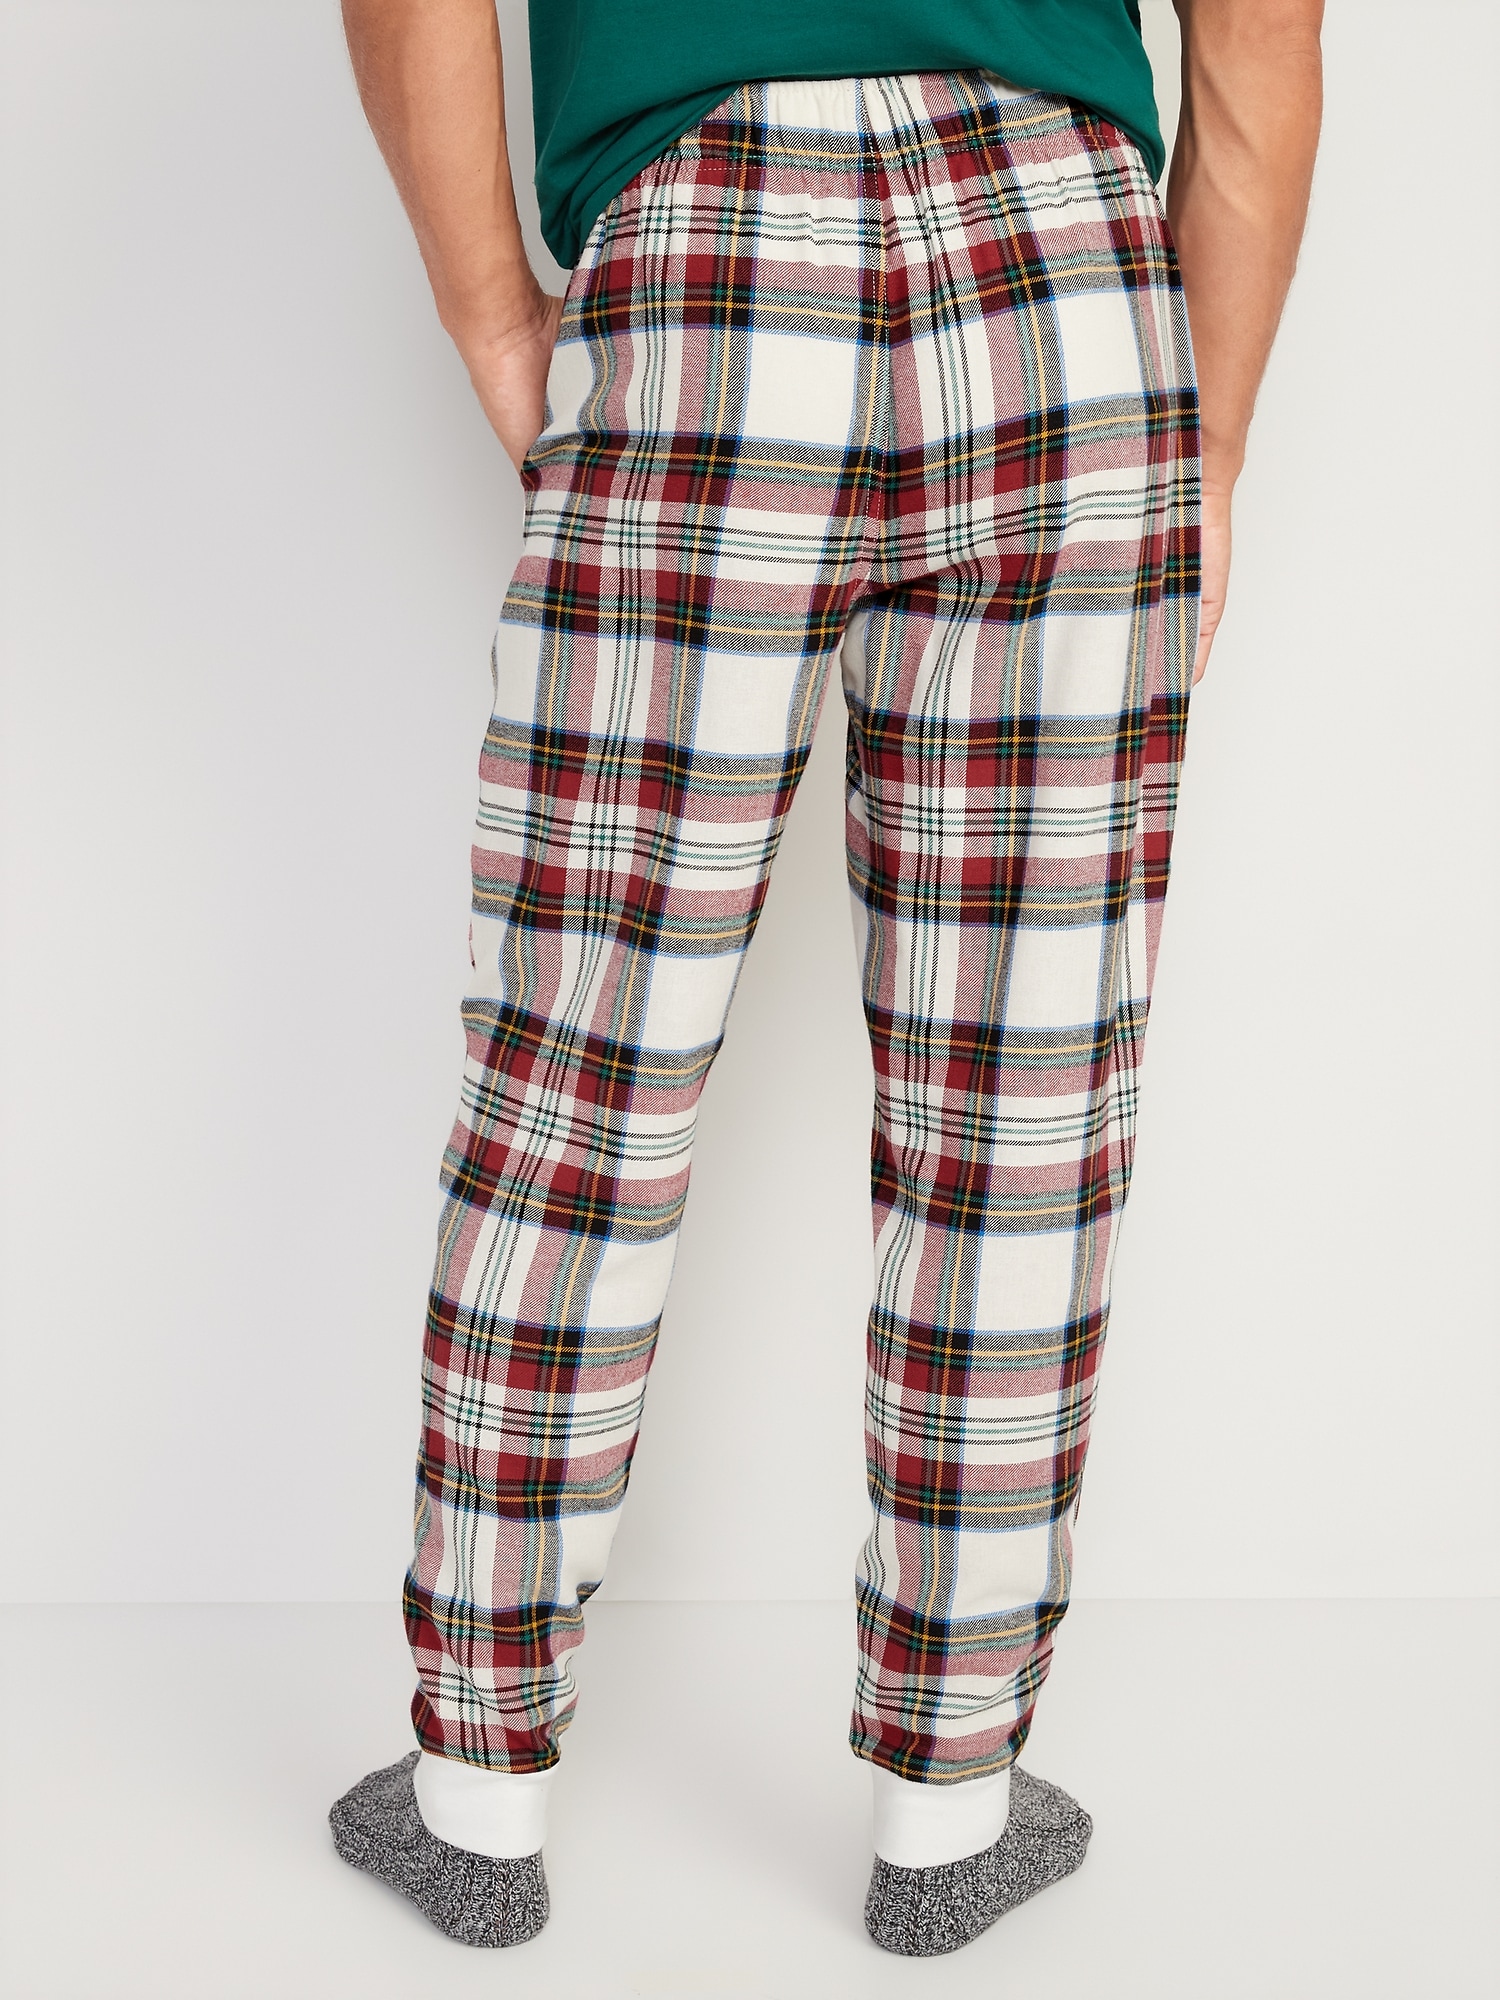 CYZ Men's 100% Cotton Super Soft Flannel Plaid Pajama Pants, F1510